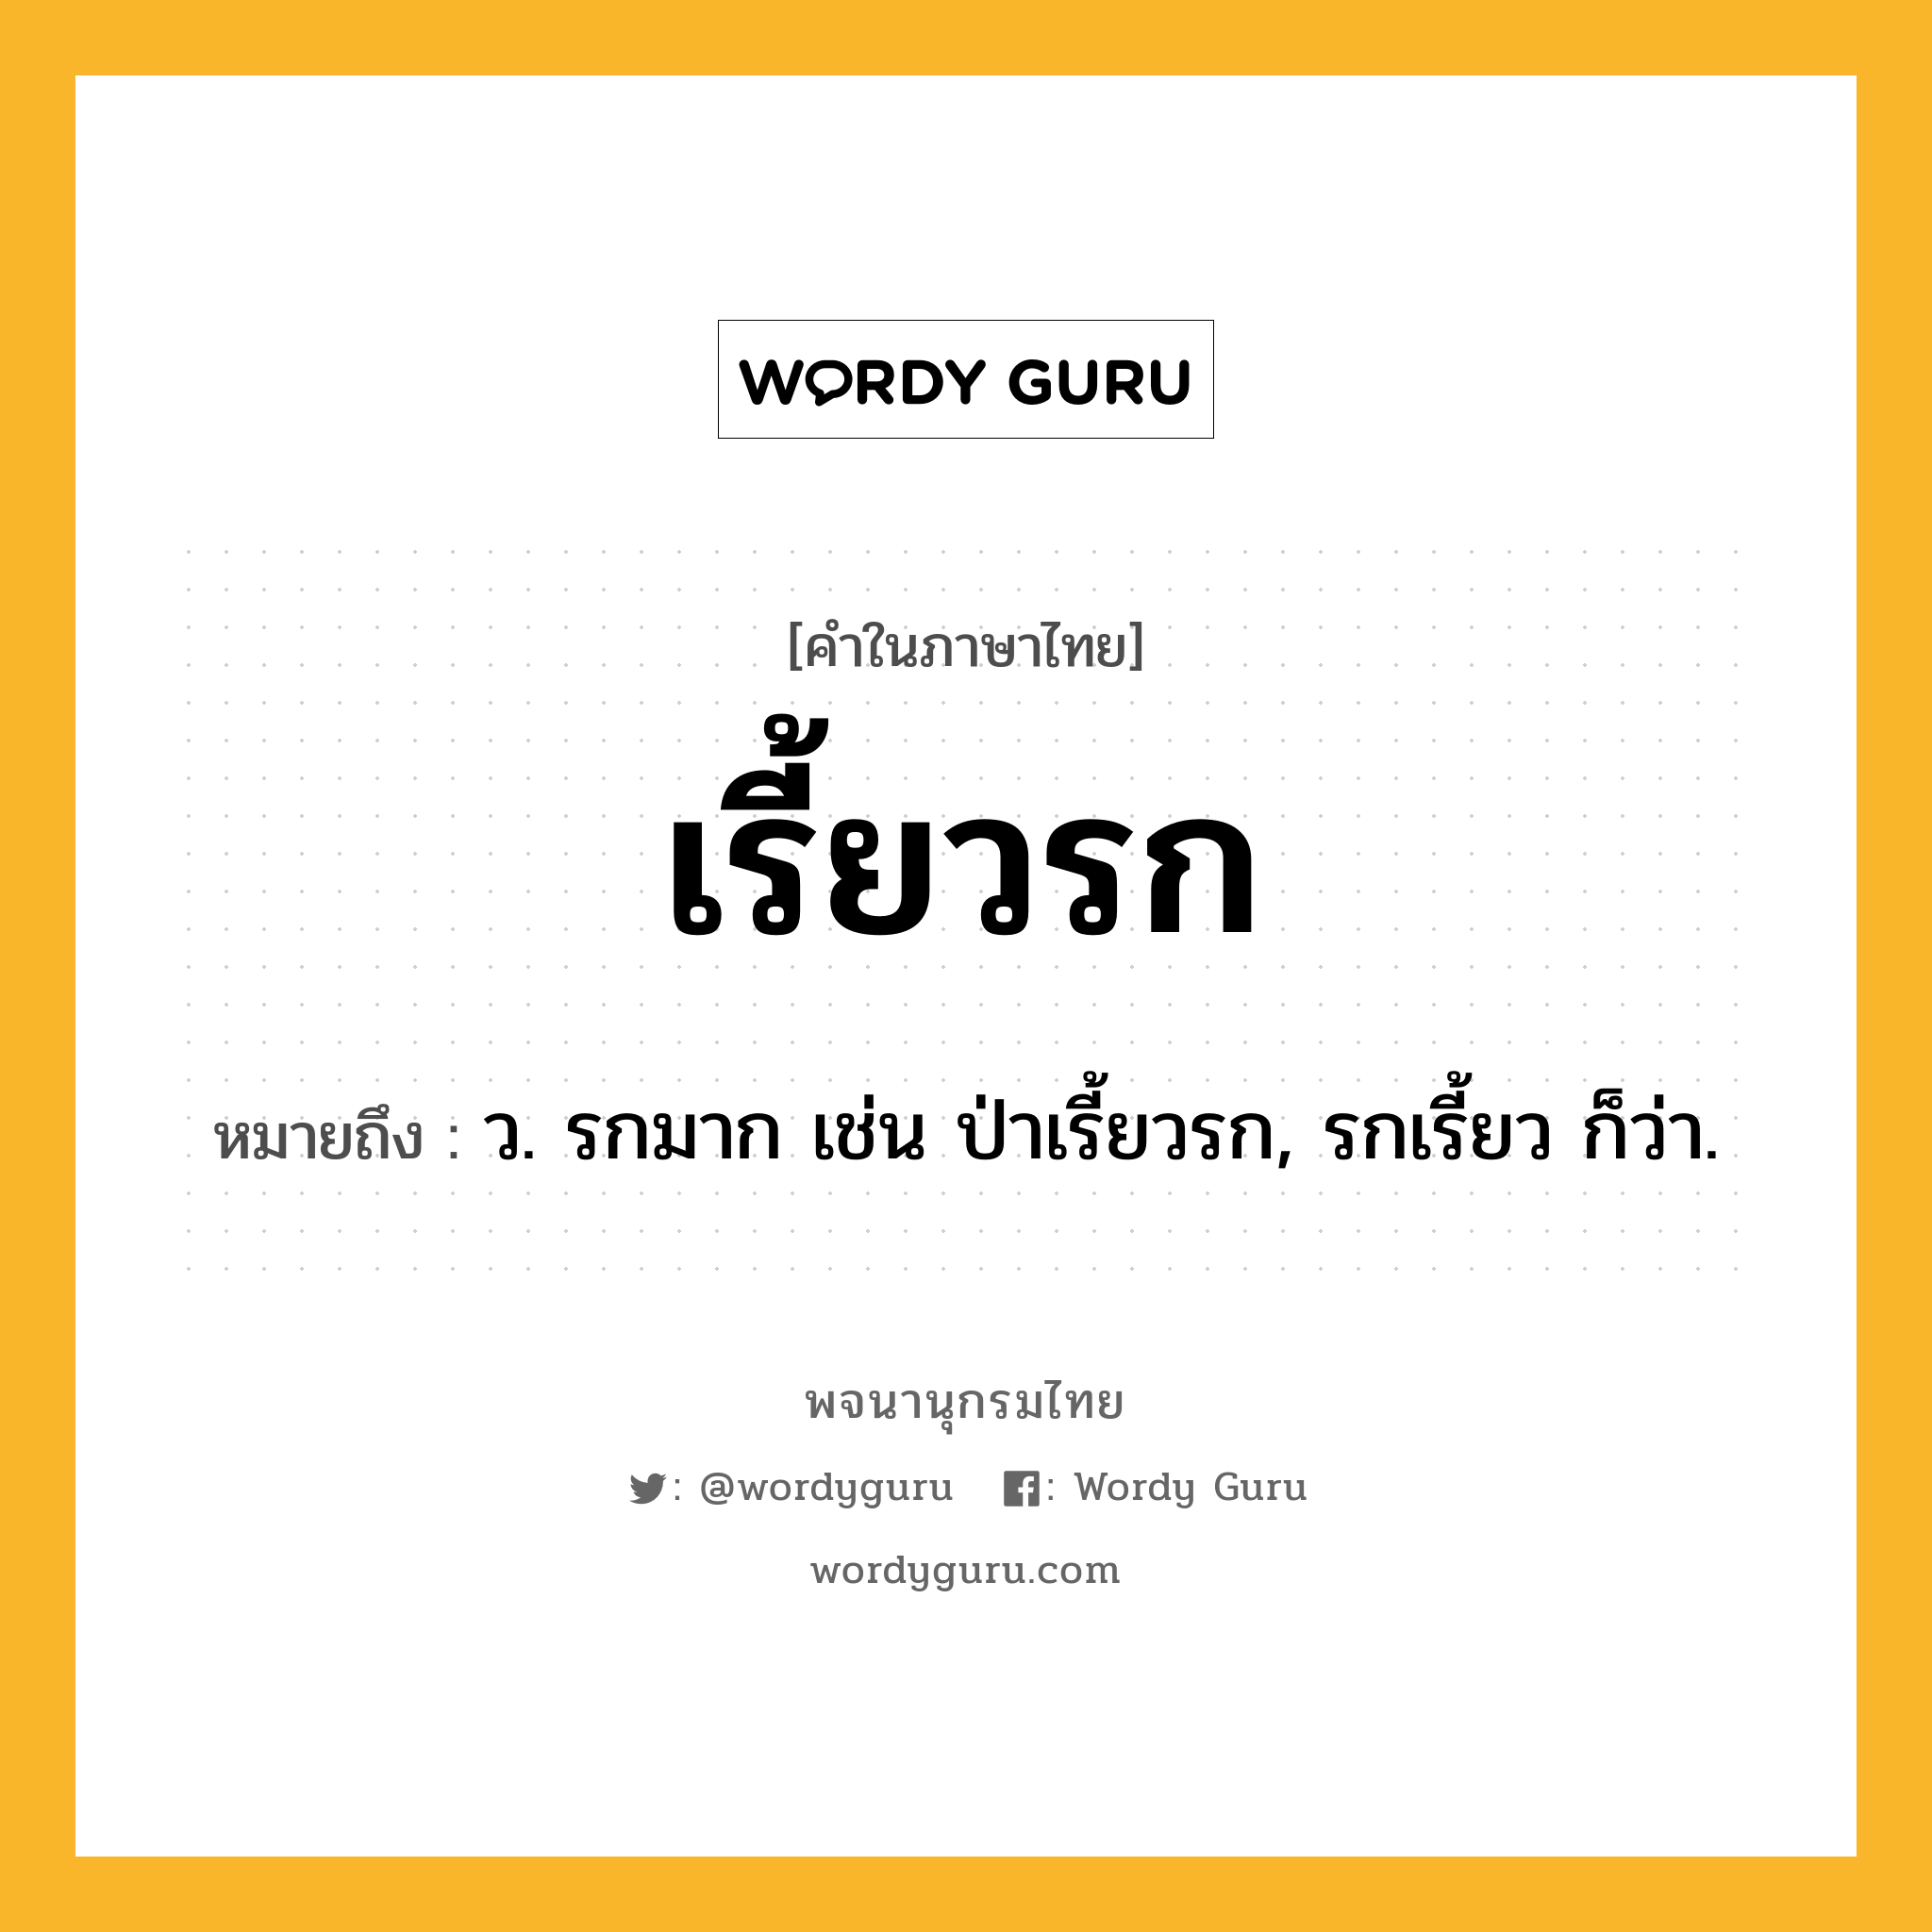 เรี้ยวรก หมายถึงอะไร?, คำในภาษาไทย เรี้ยวรก หมายถึง ว. รกมาก เช่น ป่าเรี้ยวรก, รกเรี้ยว ก็ว่า.